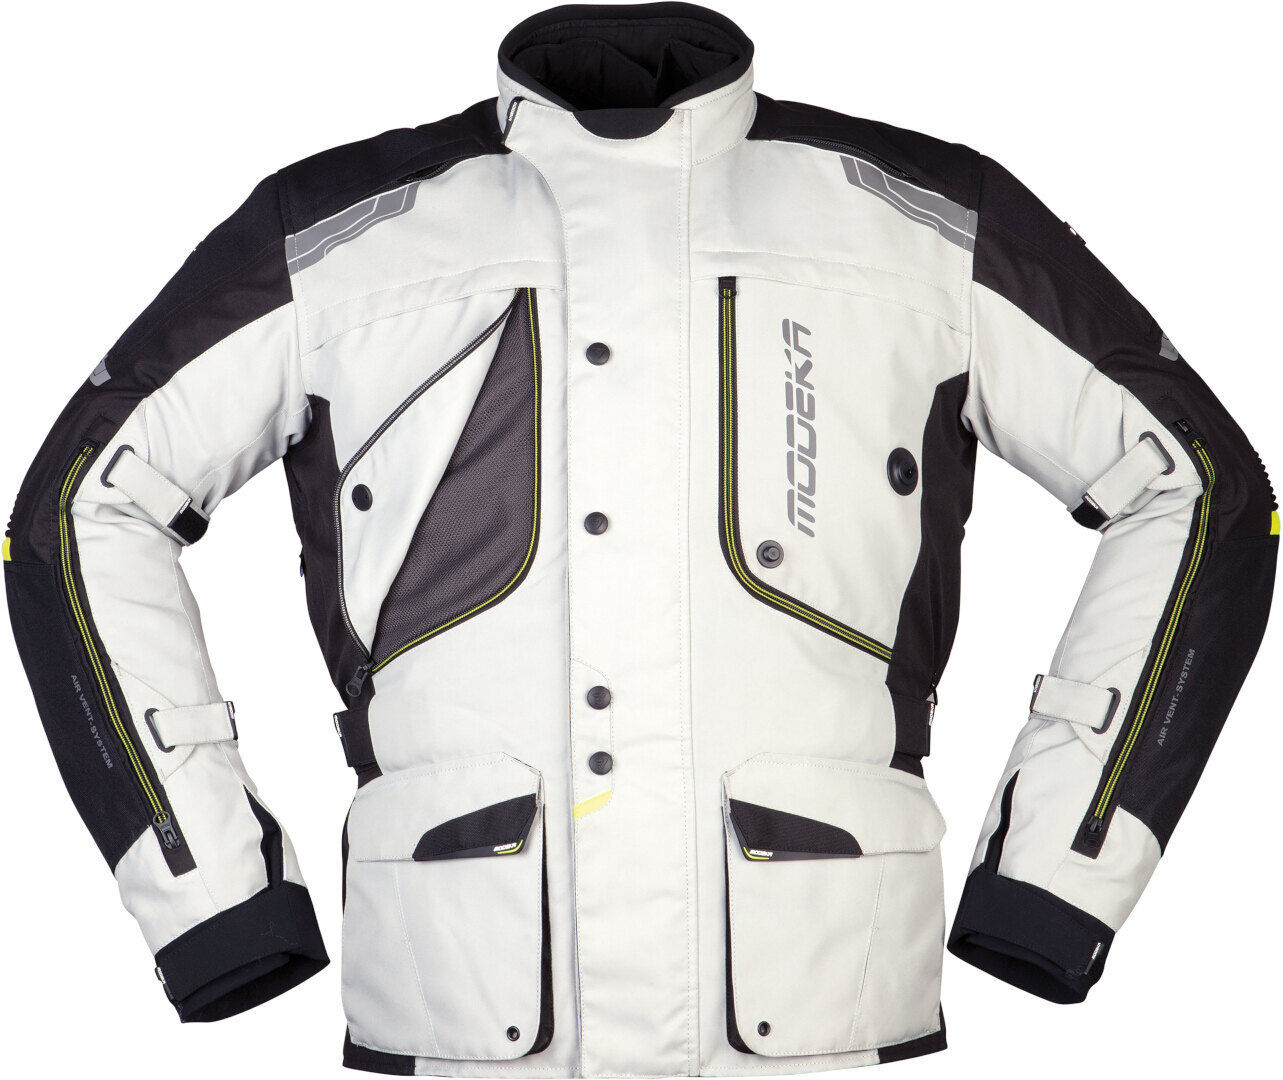 Modeka Aeris Motorsykkel tekstil jakke 5XL Svart Grå